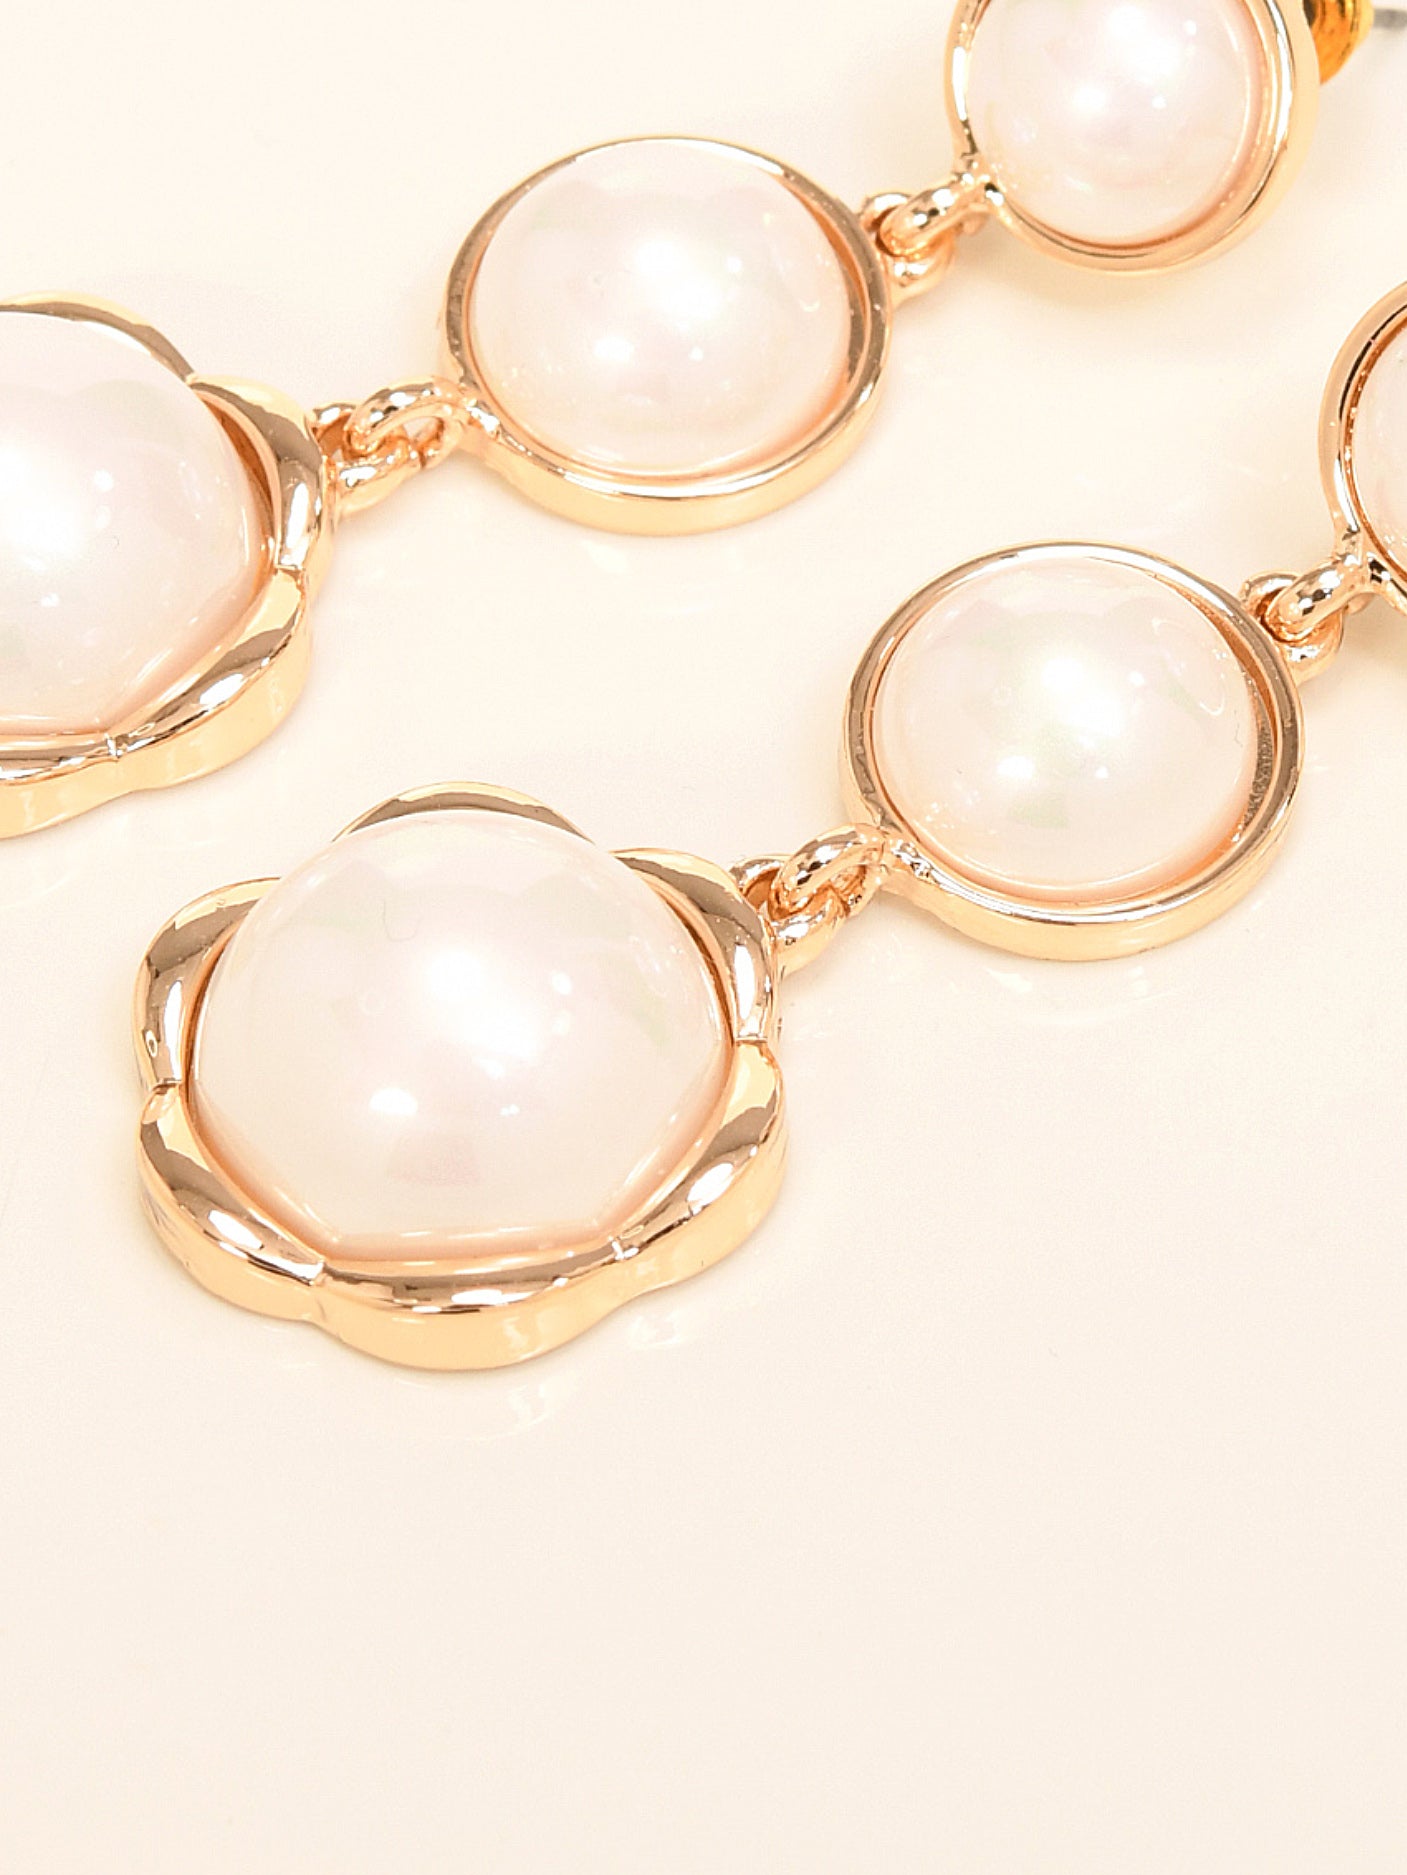 Pearl Tier Earrings